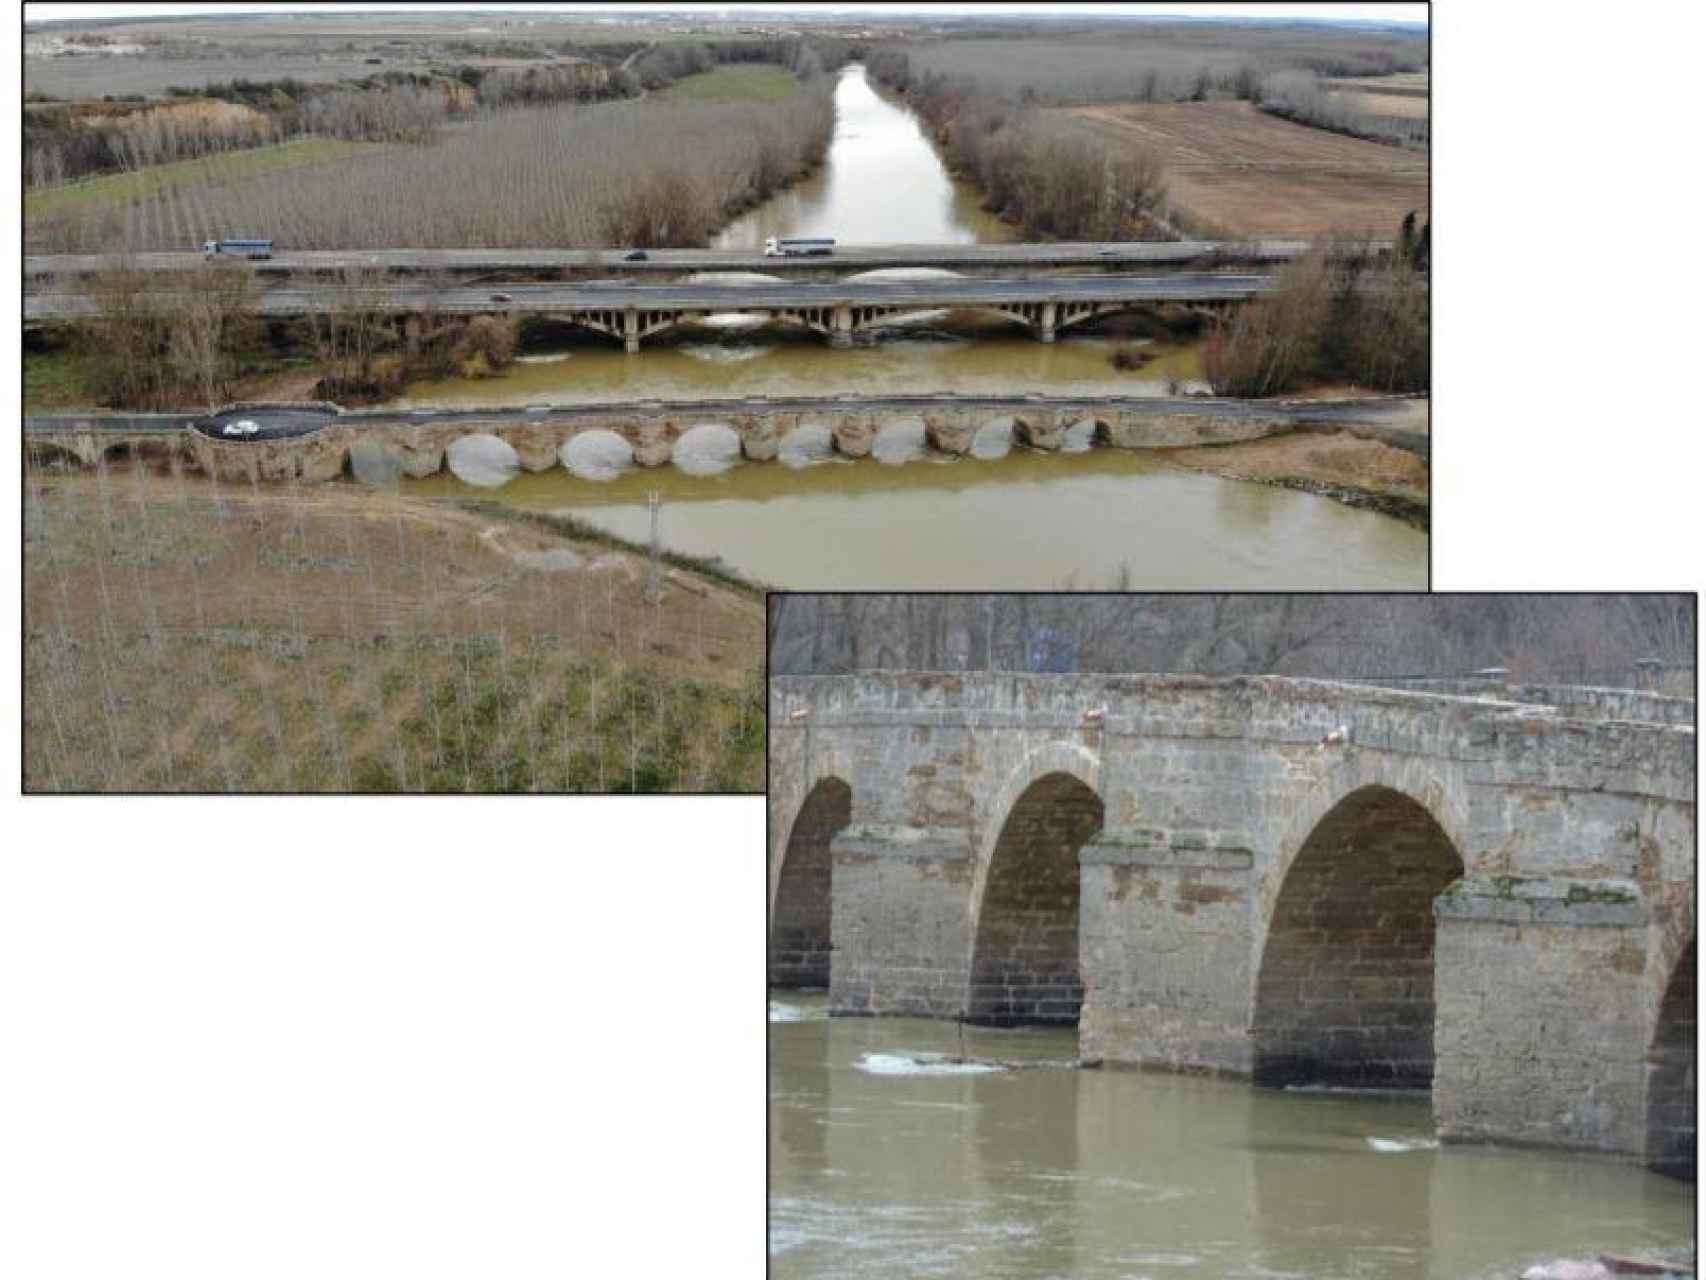 Finalizan las obras de rehabilitación del puente histórico de Castrogonzalo